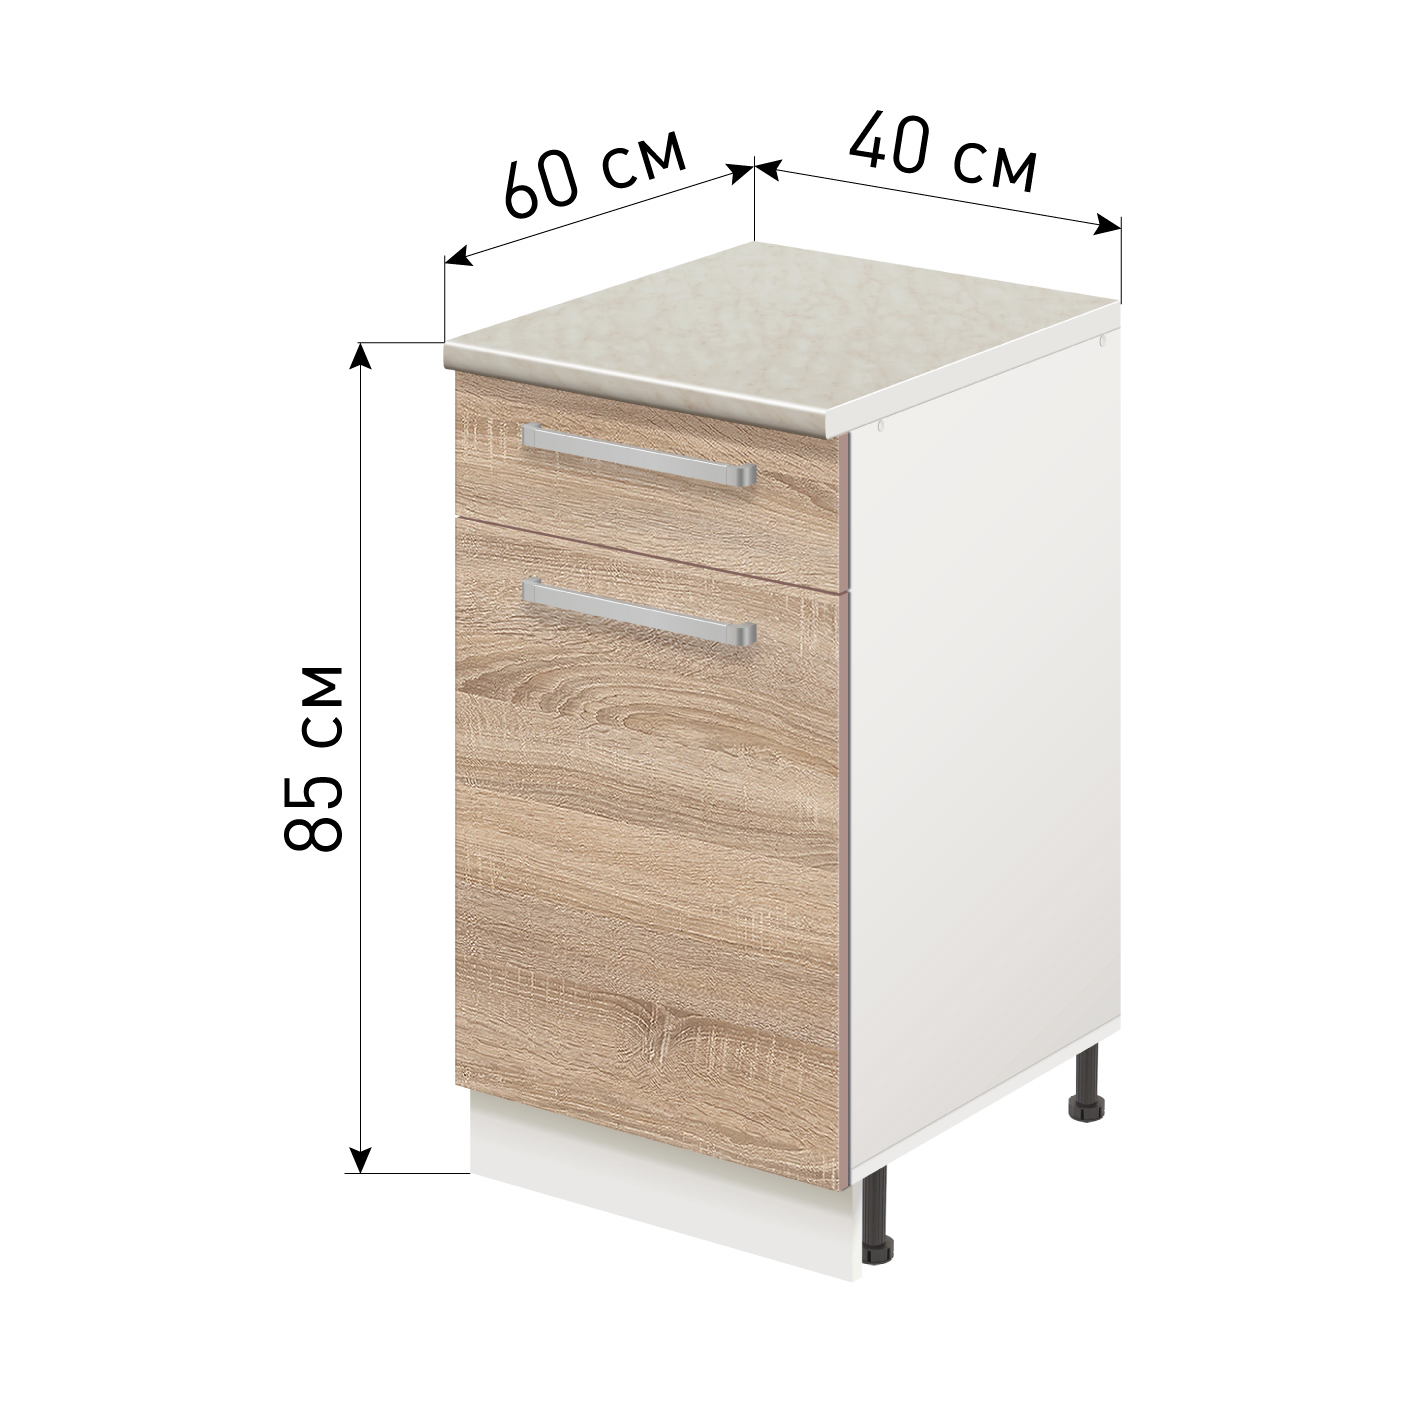 Кухонный напольный шкаф с ящиками и столешницей 40 см